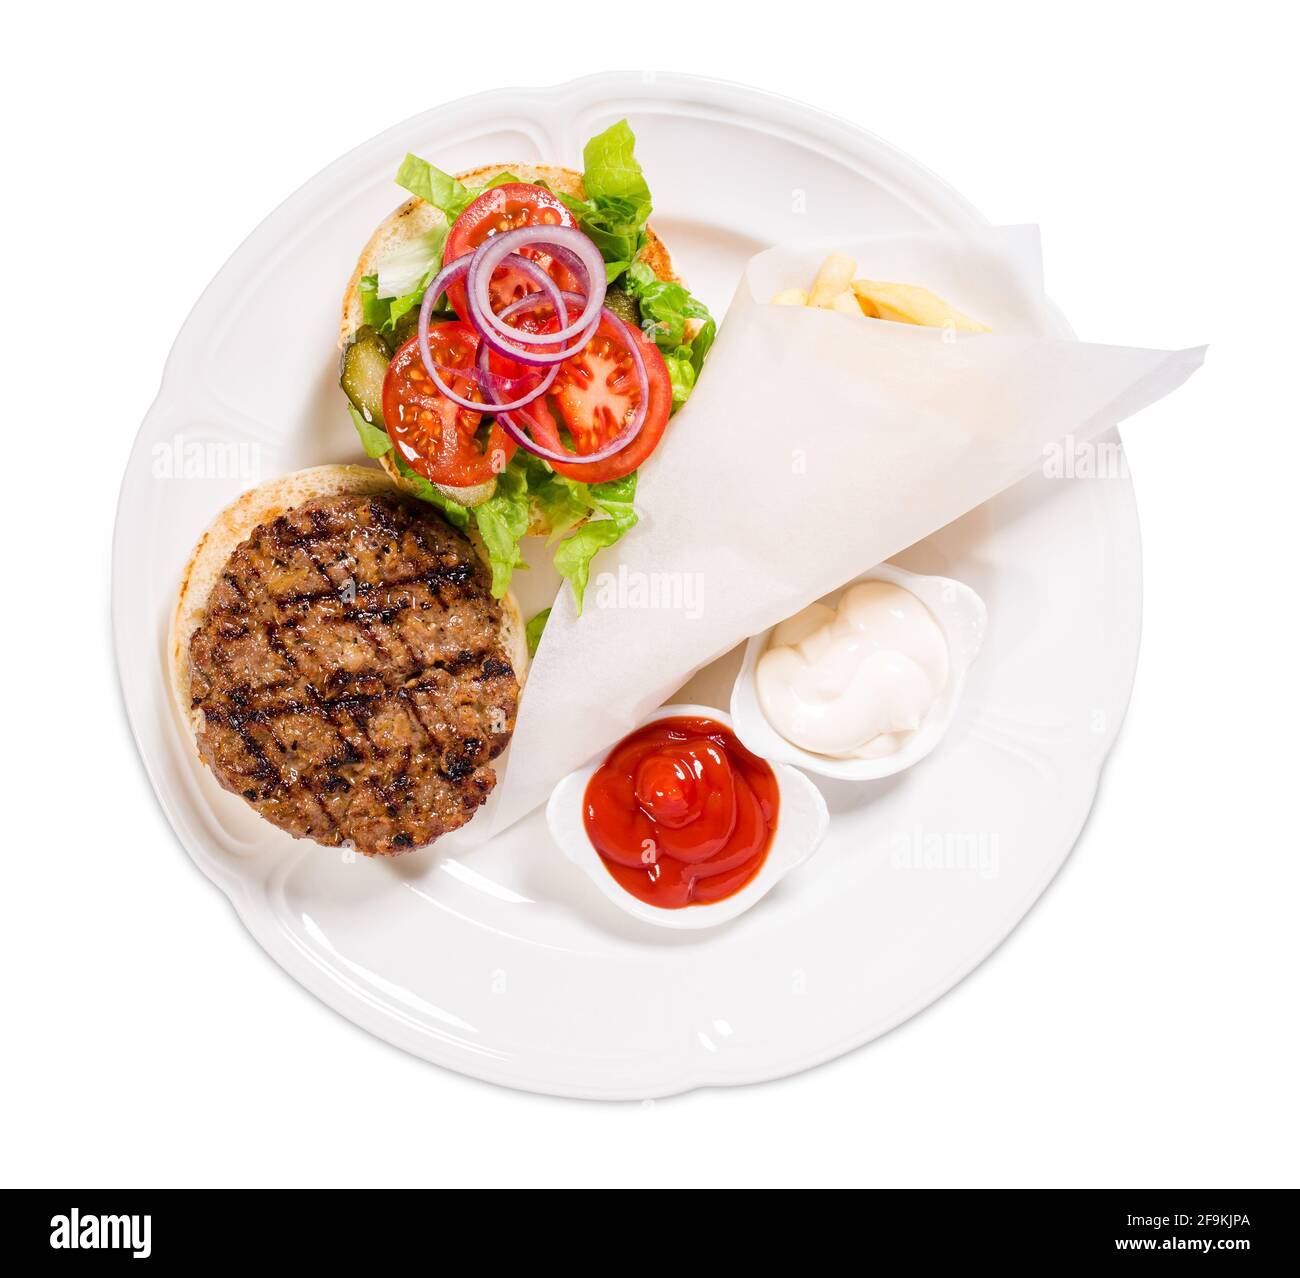 Délicieux hamburger de bœuf grillé avec frites de pommes de terre. Isolé sur un fond blanc. Banque D'Images